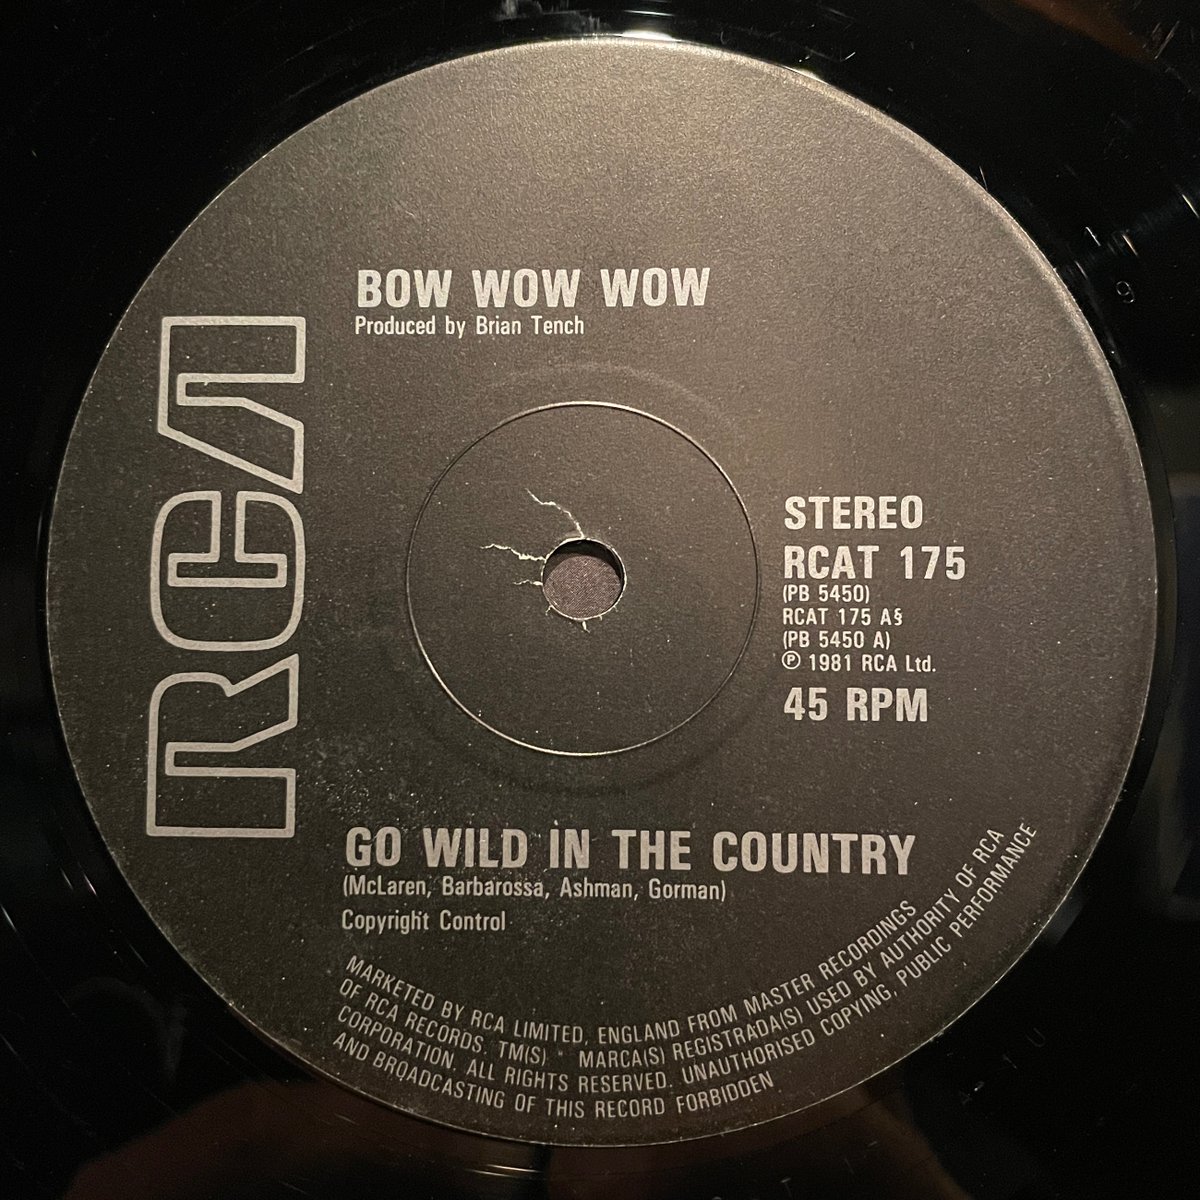 ほな12いこか
BOW WOW WOW / Go Wild In The Country [’82 RCA --- RCAT 175]
#BowWowWow #GoWildInTheCountry #AnnabellaLwin #MatthewAshman #LeighGorman #DaveBarbarossa #MalcolmMcLaren #BrianTench #vinylbar #musicbar #レコードバー #mhc26082023
youtube.com/watch?v=5daIvo…